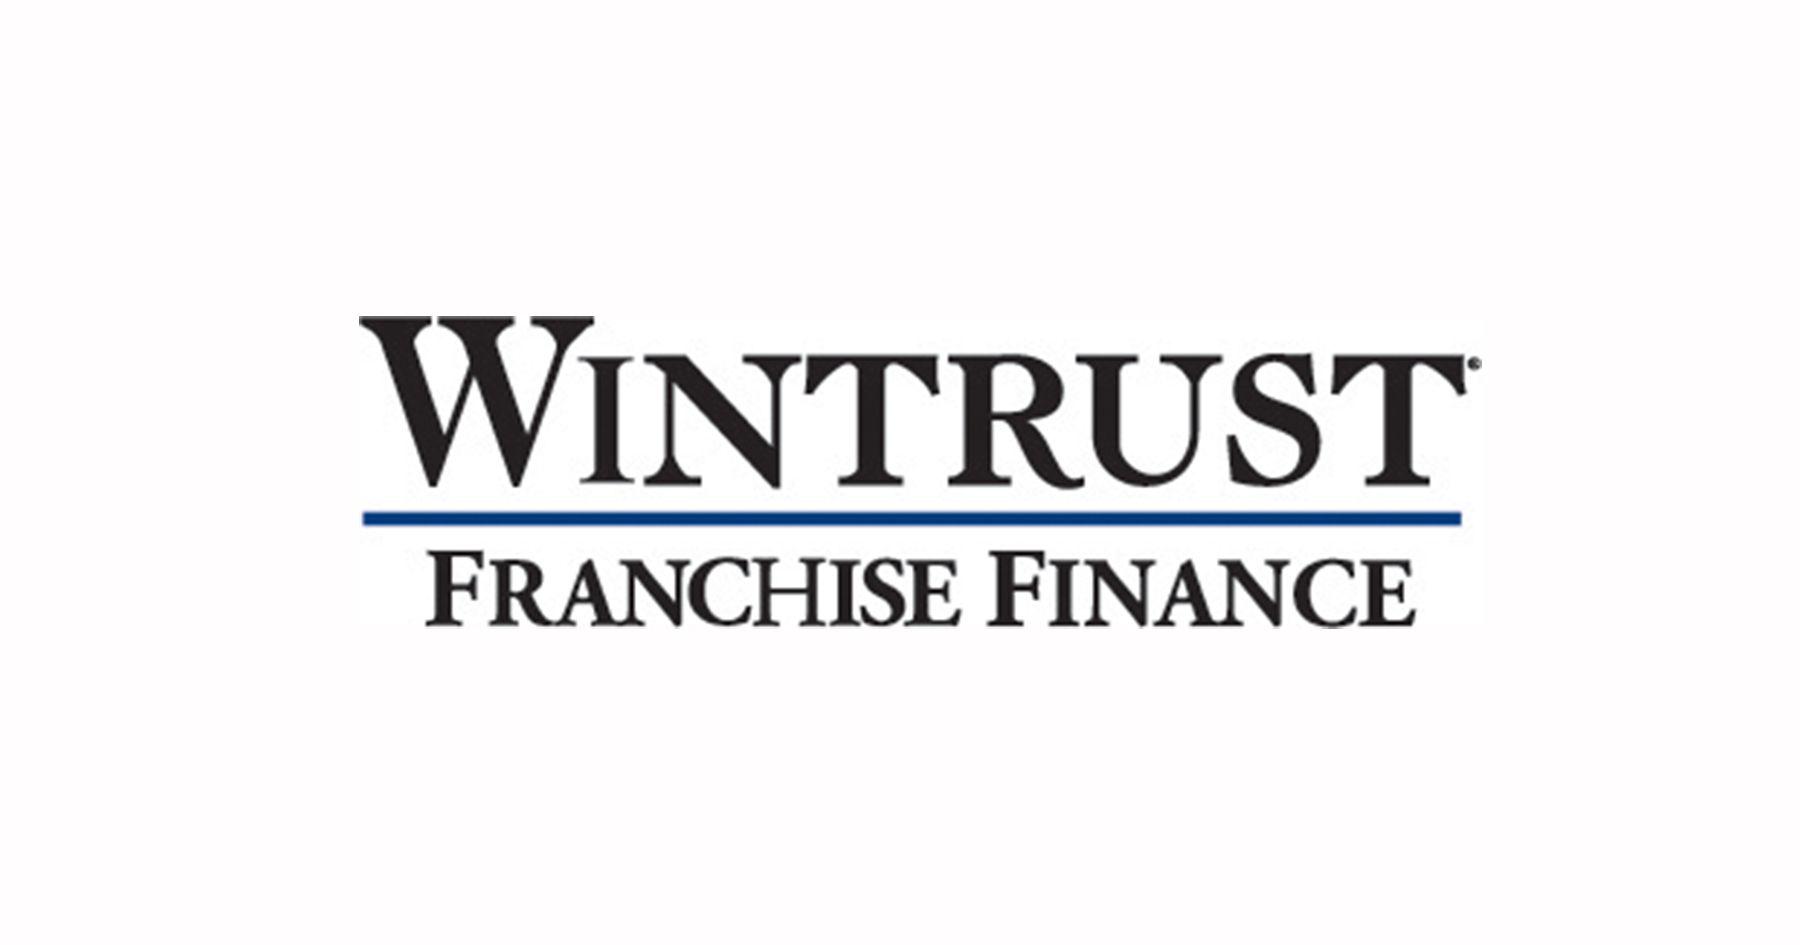 Wintrust Logo - Wintrust Franchise Finance Leadership Conference